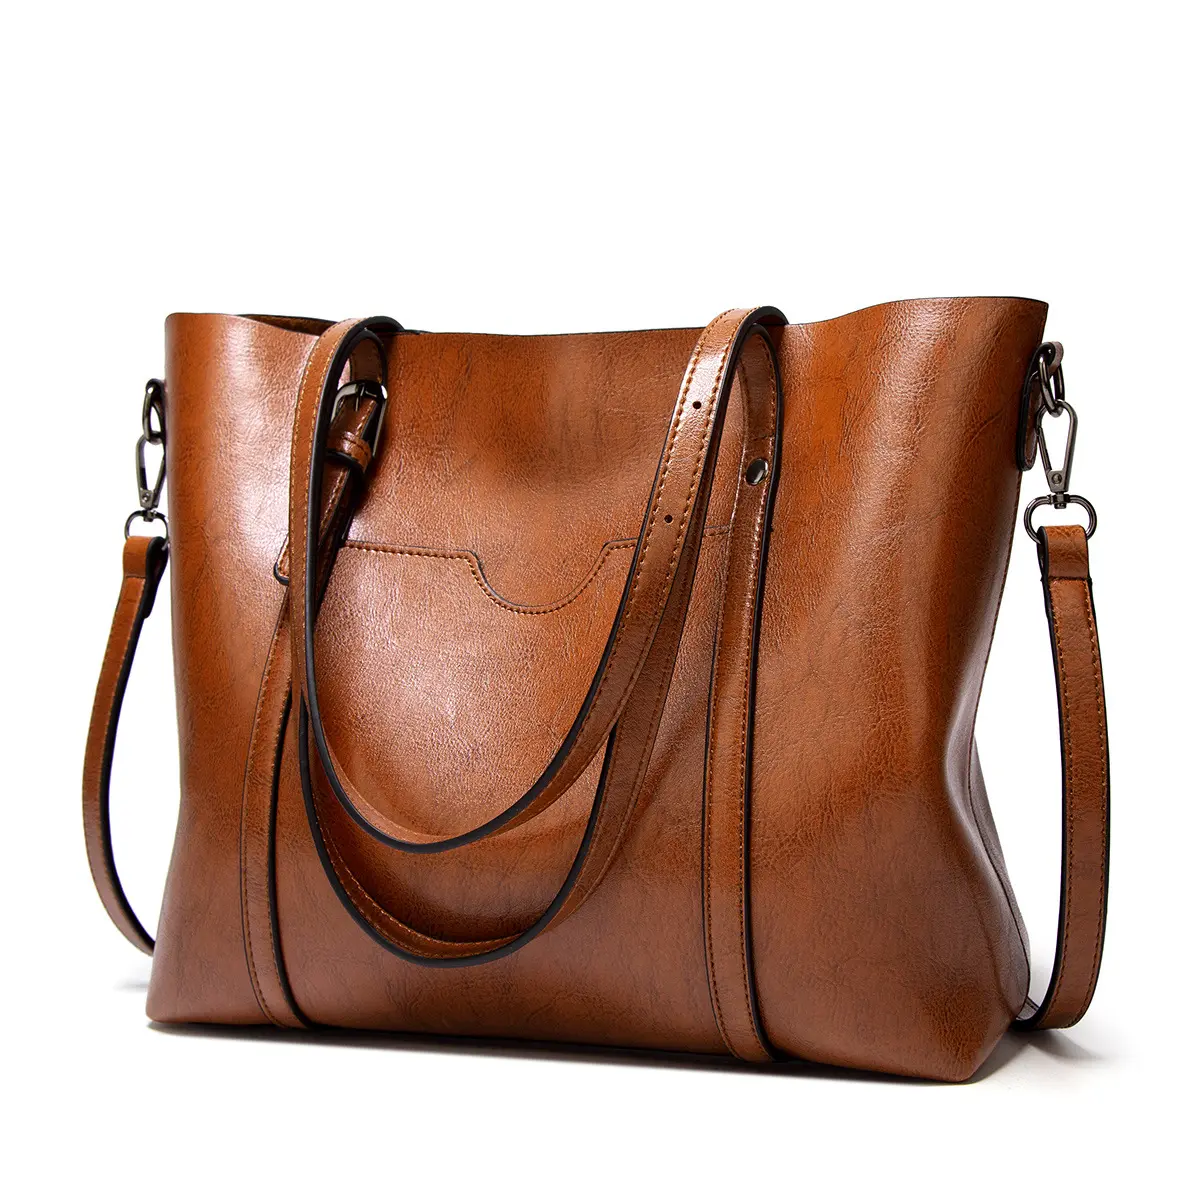 Laptop Tote Bag for Women Waterproof Leather Women Business Office Work Bag Briefcase Large Travel Handbag Shoulder Bag Black